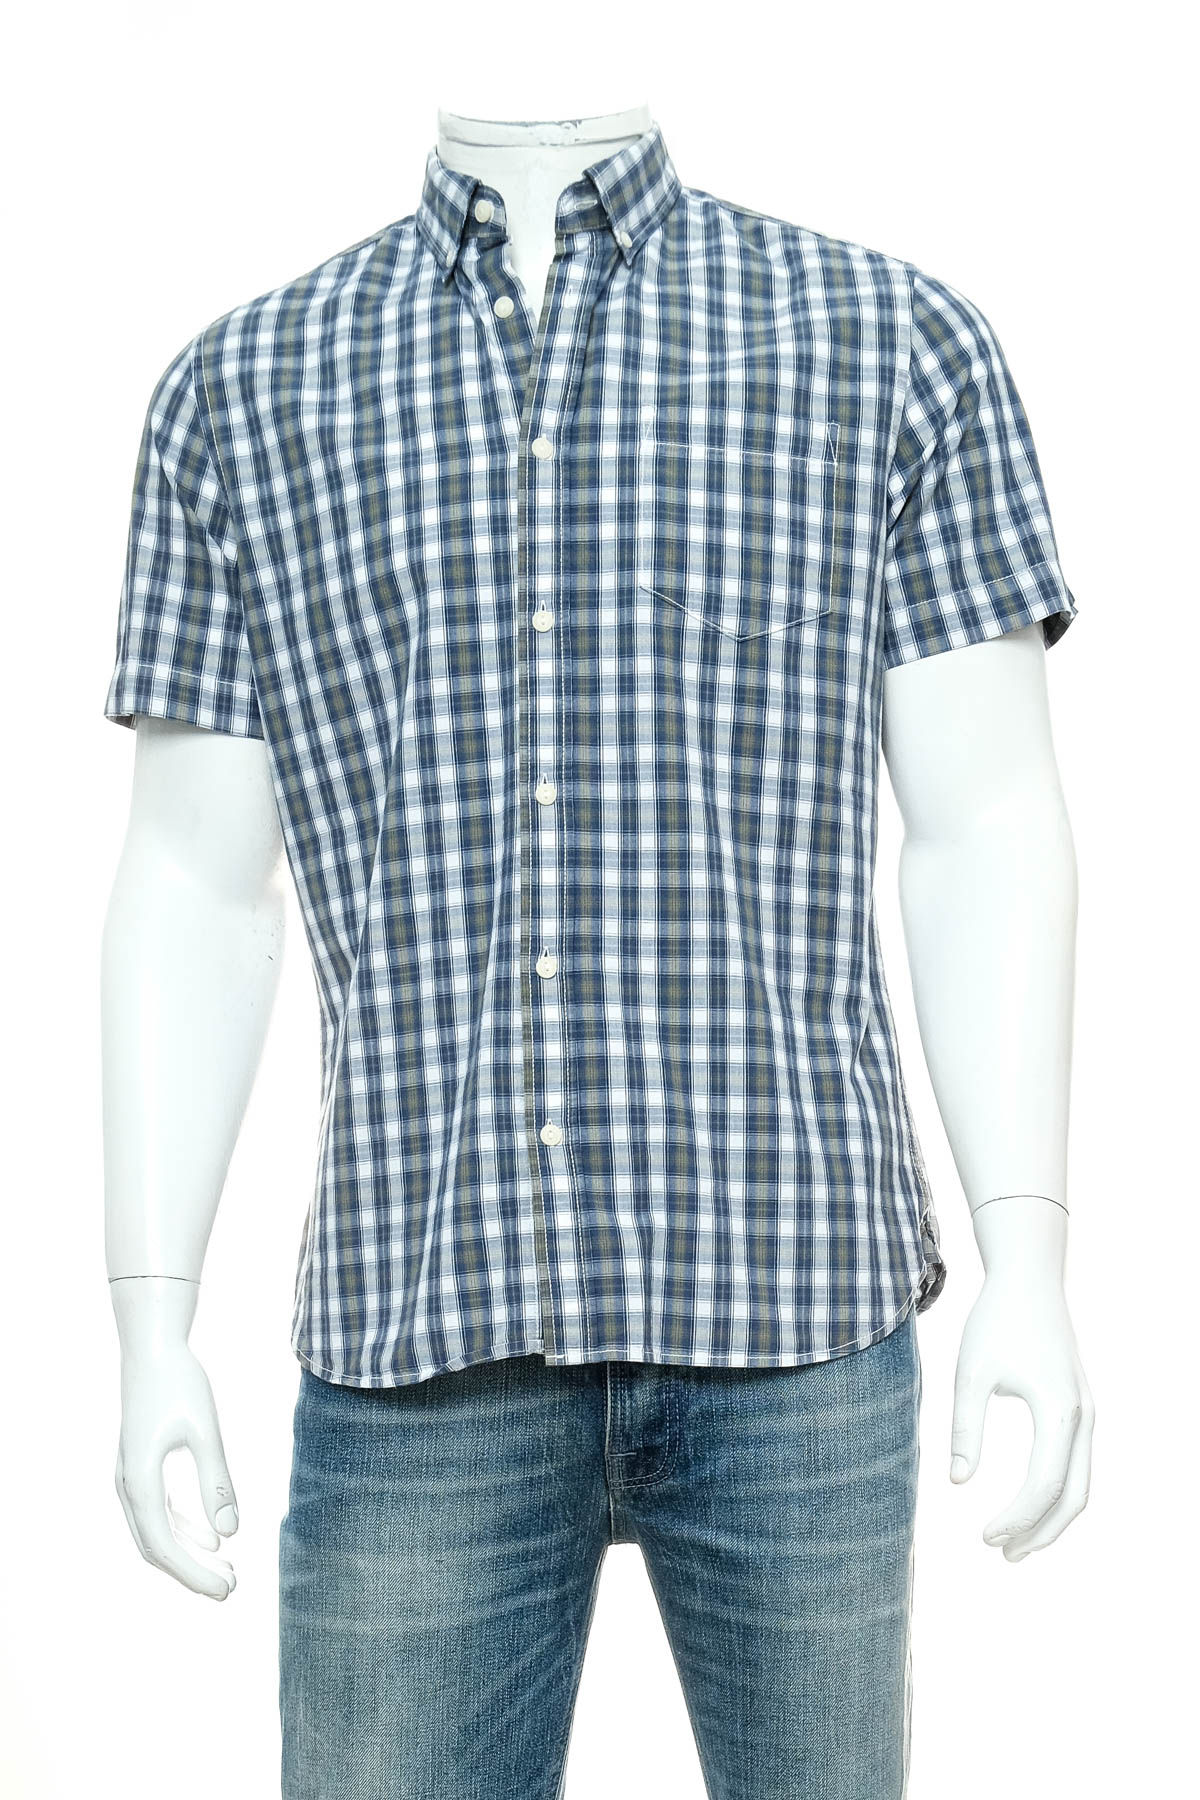 Ανδρικό πουκάμισο - C&A - 0